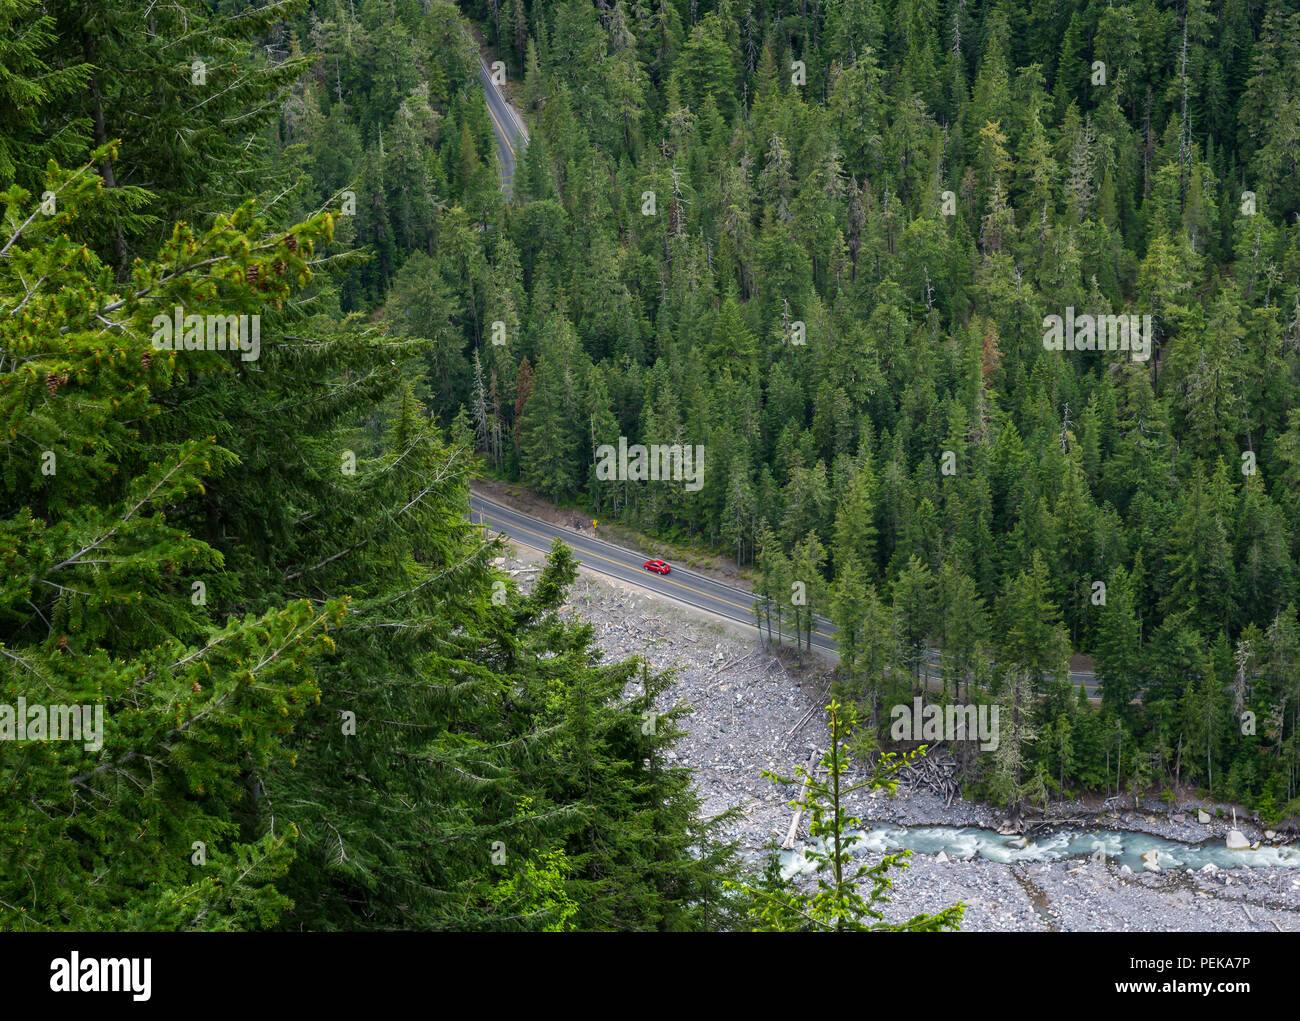 Vista aerea della lone red car guida attraverso un bosco di pini di foresta di conifere in Mount Rainier National Park, nello stato di Washington, USA. Foto Stock